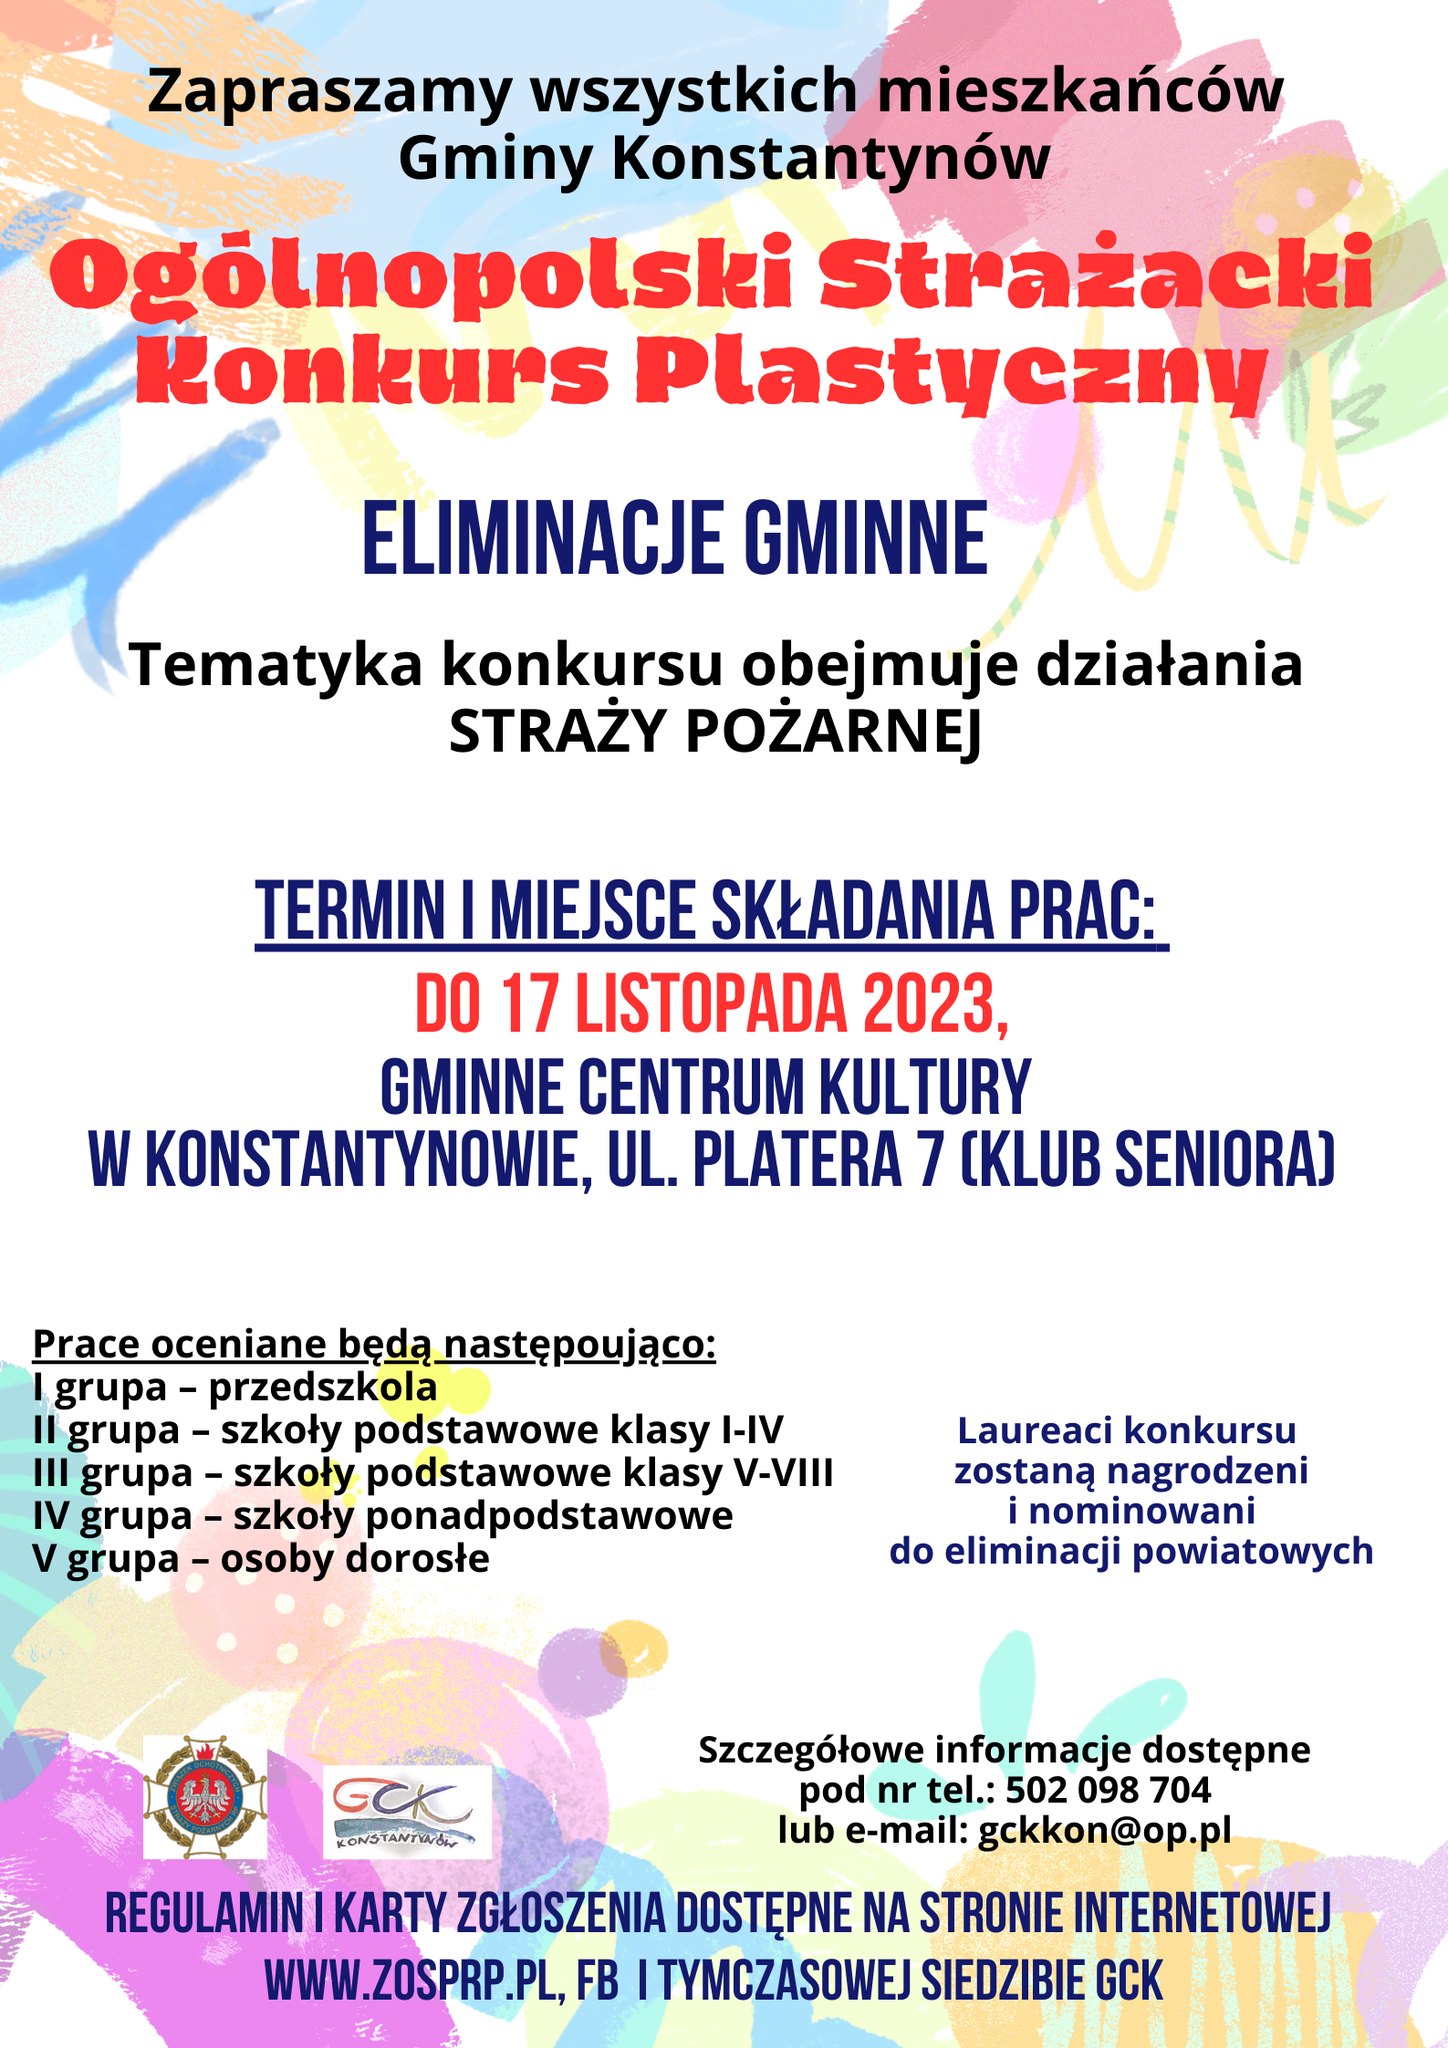 You are currently viewing Ogólnopolski Strażacki Konkurs Plastyczny